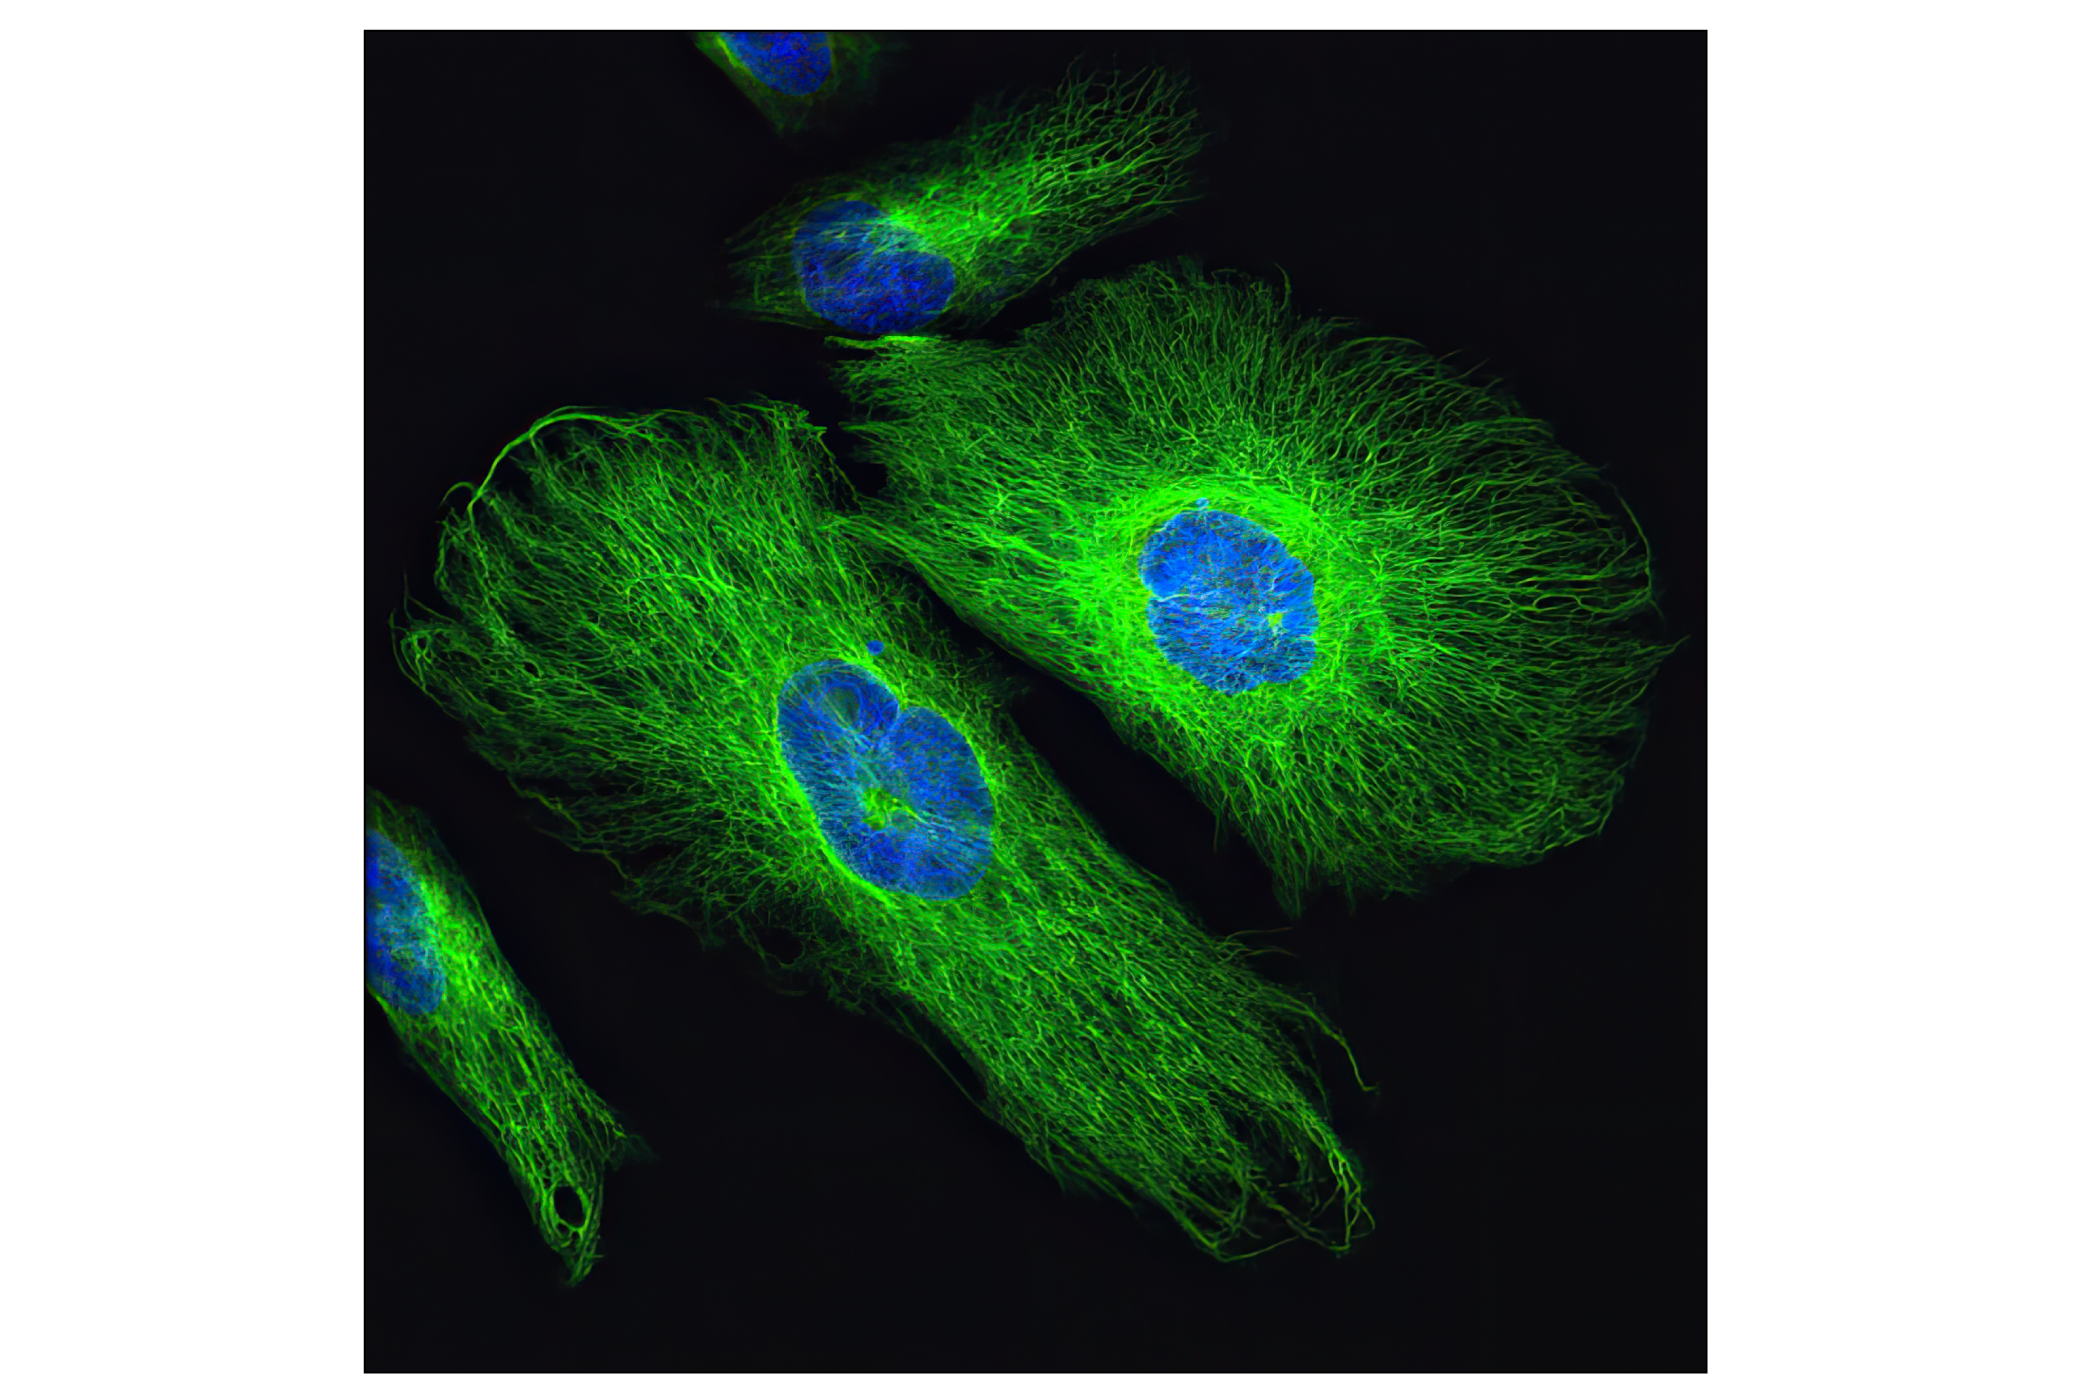  Image 29: Cell Fractionation Antibody Sampler Kit